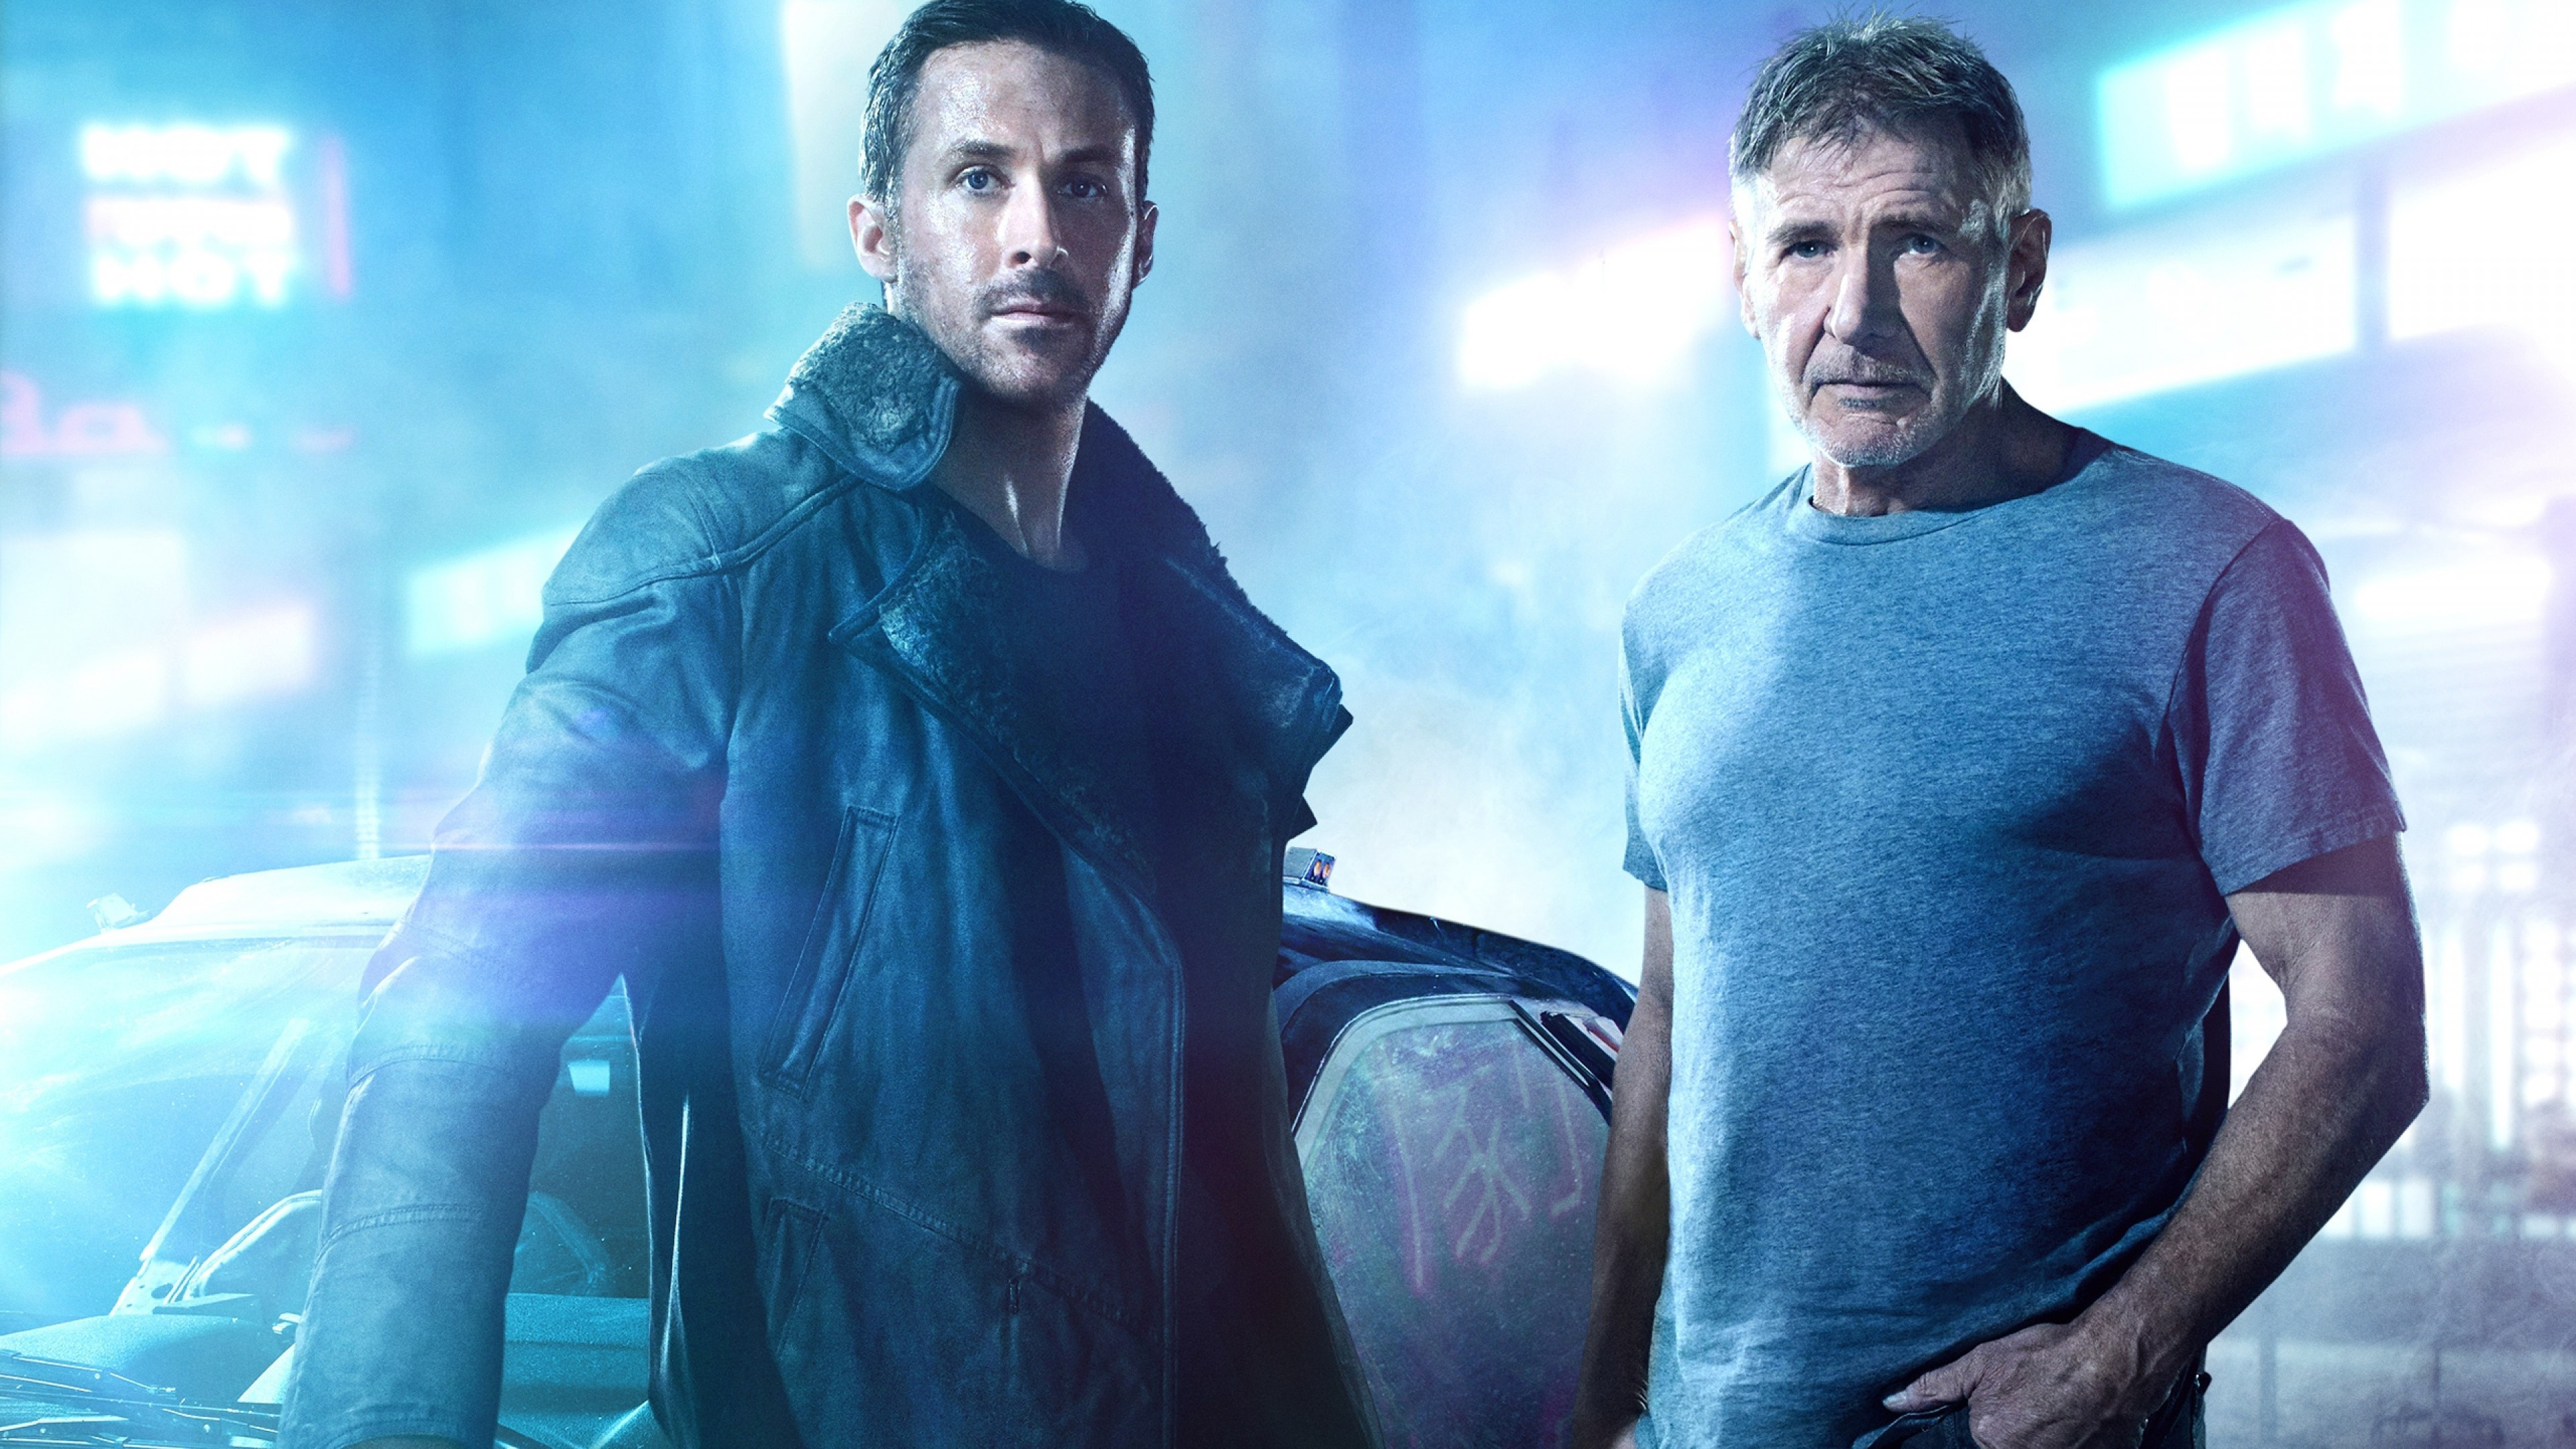 Ryan Gosling: Blade Runner 2049, Harrison Ford, Rick Deckard, Officer K. 3840x2160 4K Wallpaper.